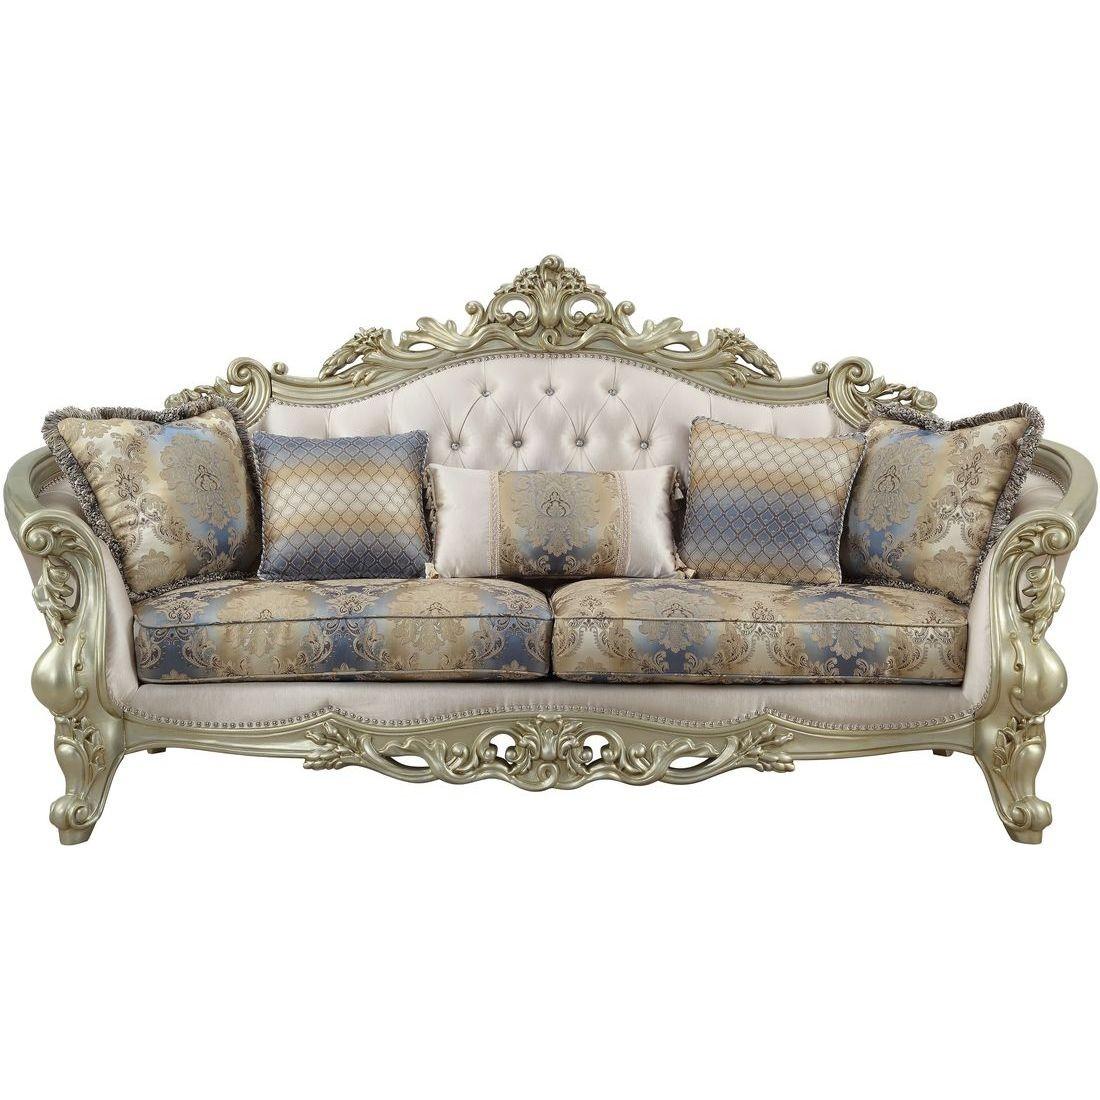 

    
Luxury Sofa Set 5 Pcs Gorsedd-52440 Antique White Cream Fabric Acme Traditional
